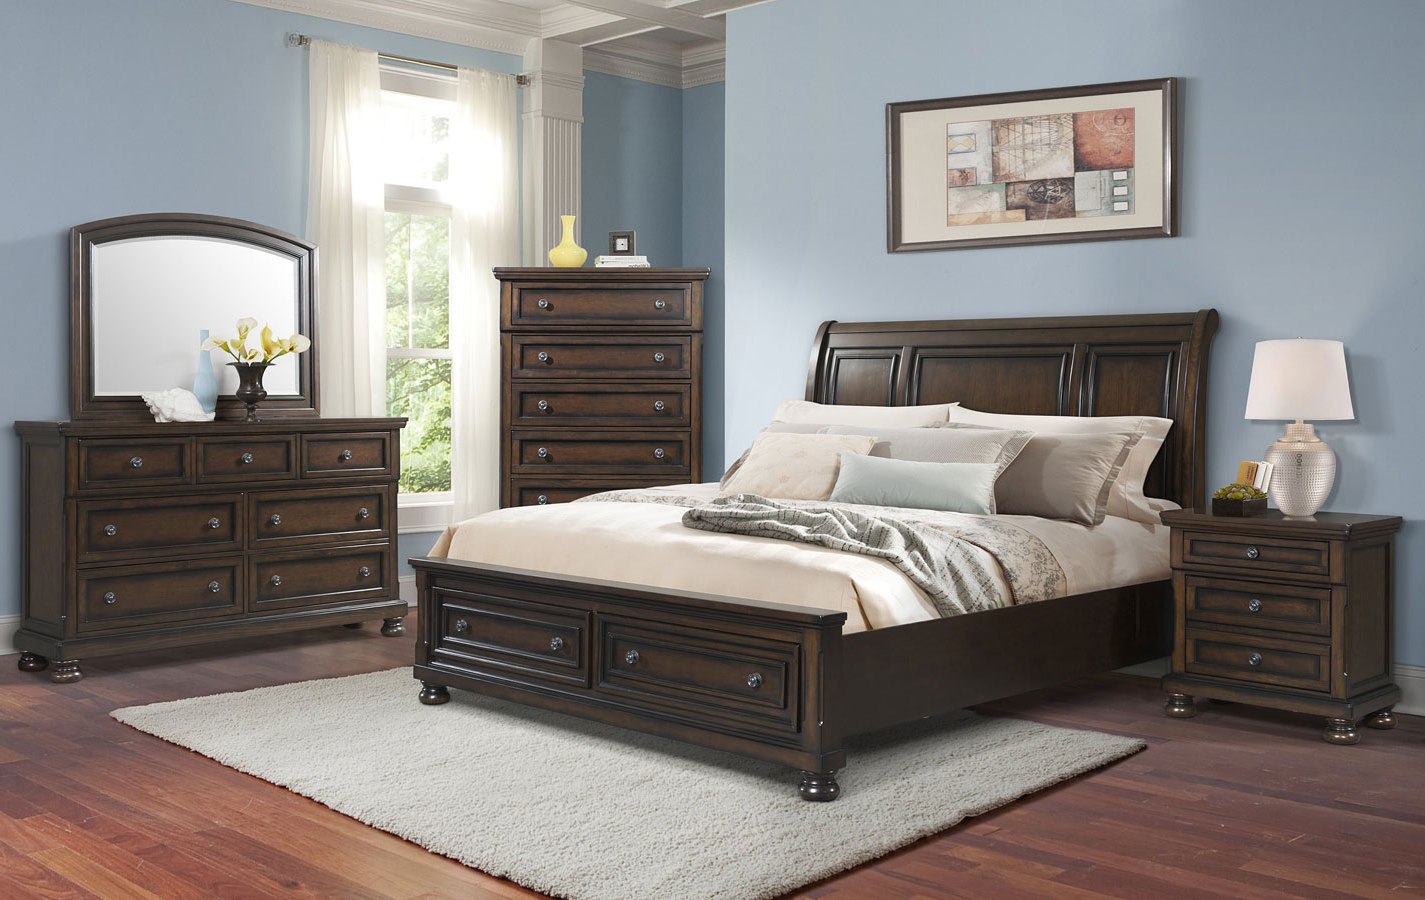 kingston bedroom furniture preston